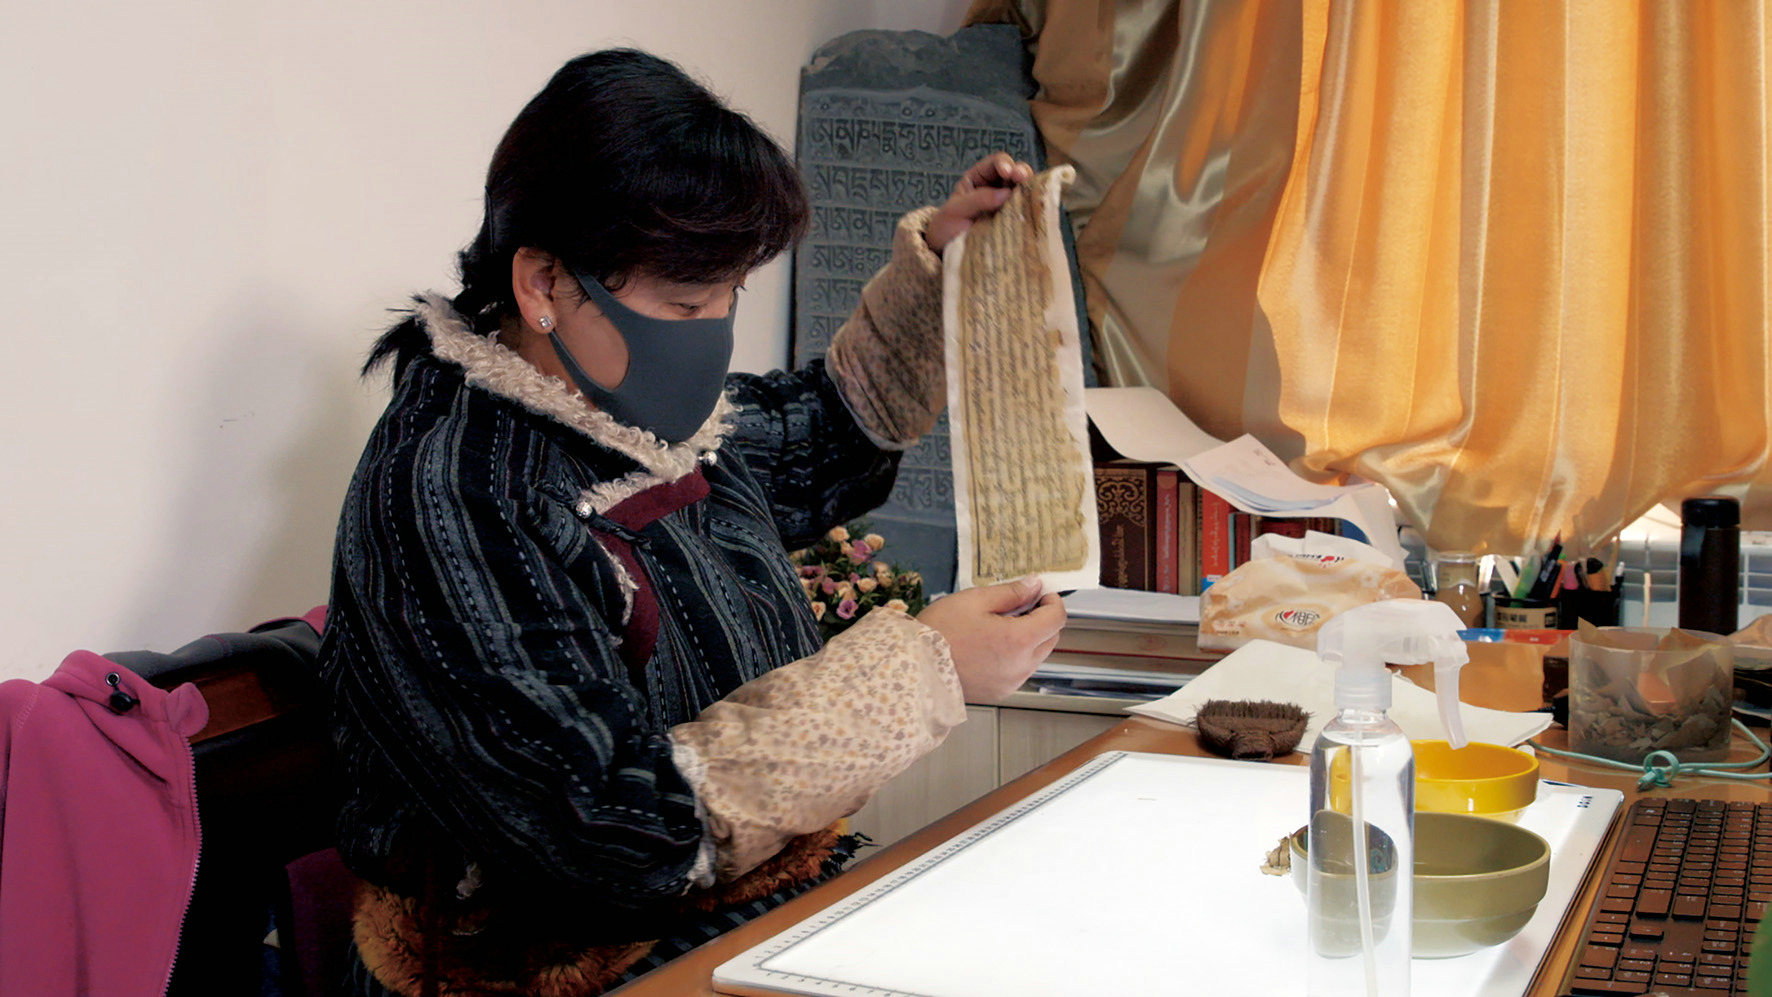 西藏自治区图书馆的古籍修复师央拉正在修复藏文古籍.jpg